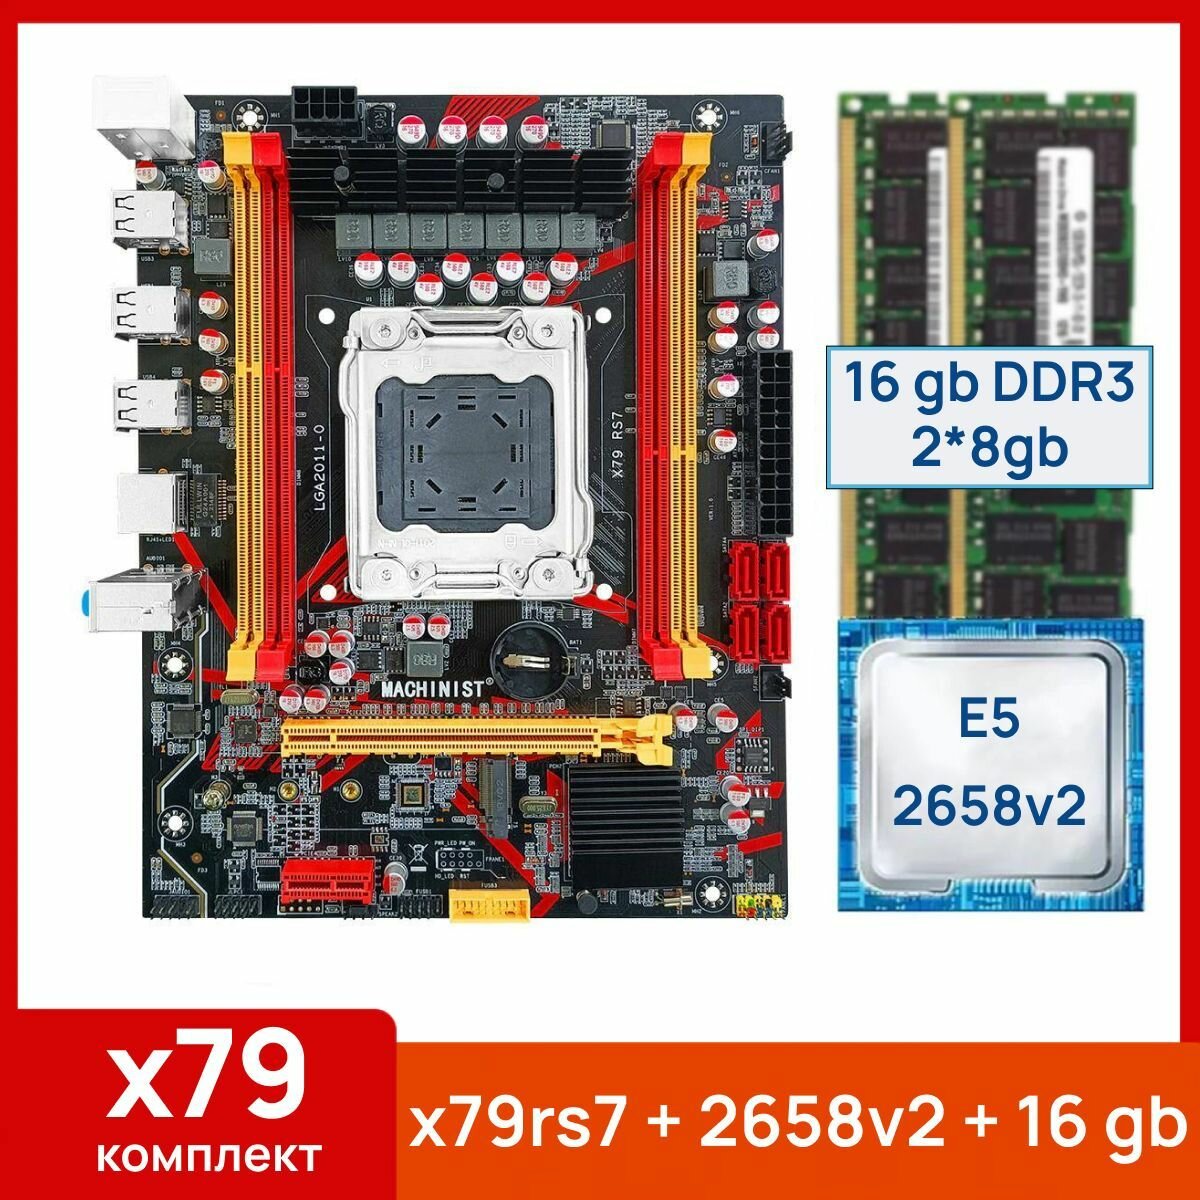 Комплект: Материнская плата Machinist RS-7 + Процессор Xeon E5 2658v2 + 16 gb(2x8gb) DDR3 серверная